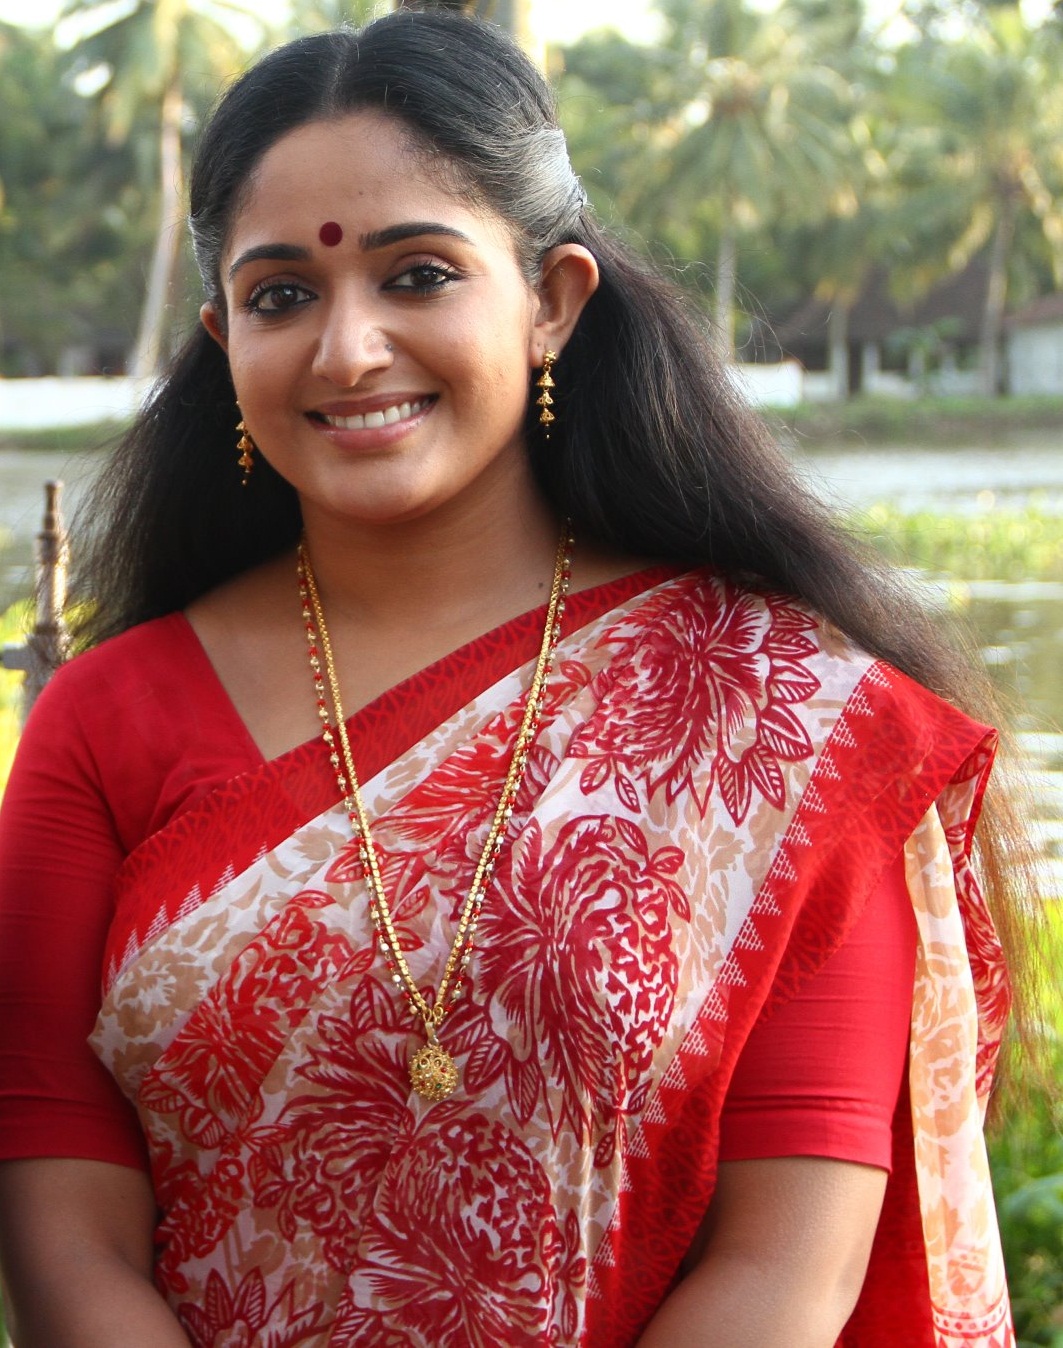 ACTRESS SEXY PHOTOS: Kavya madhavan hot photos in saree